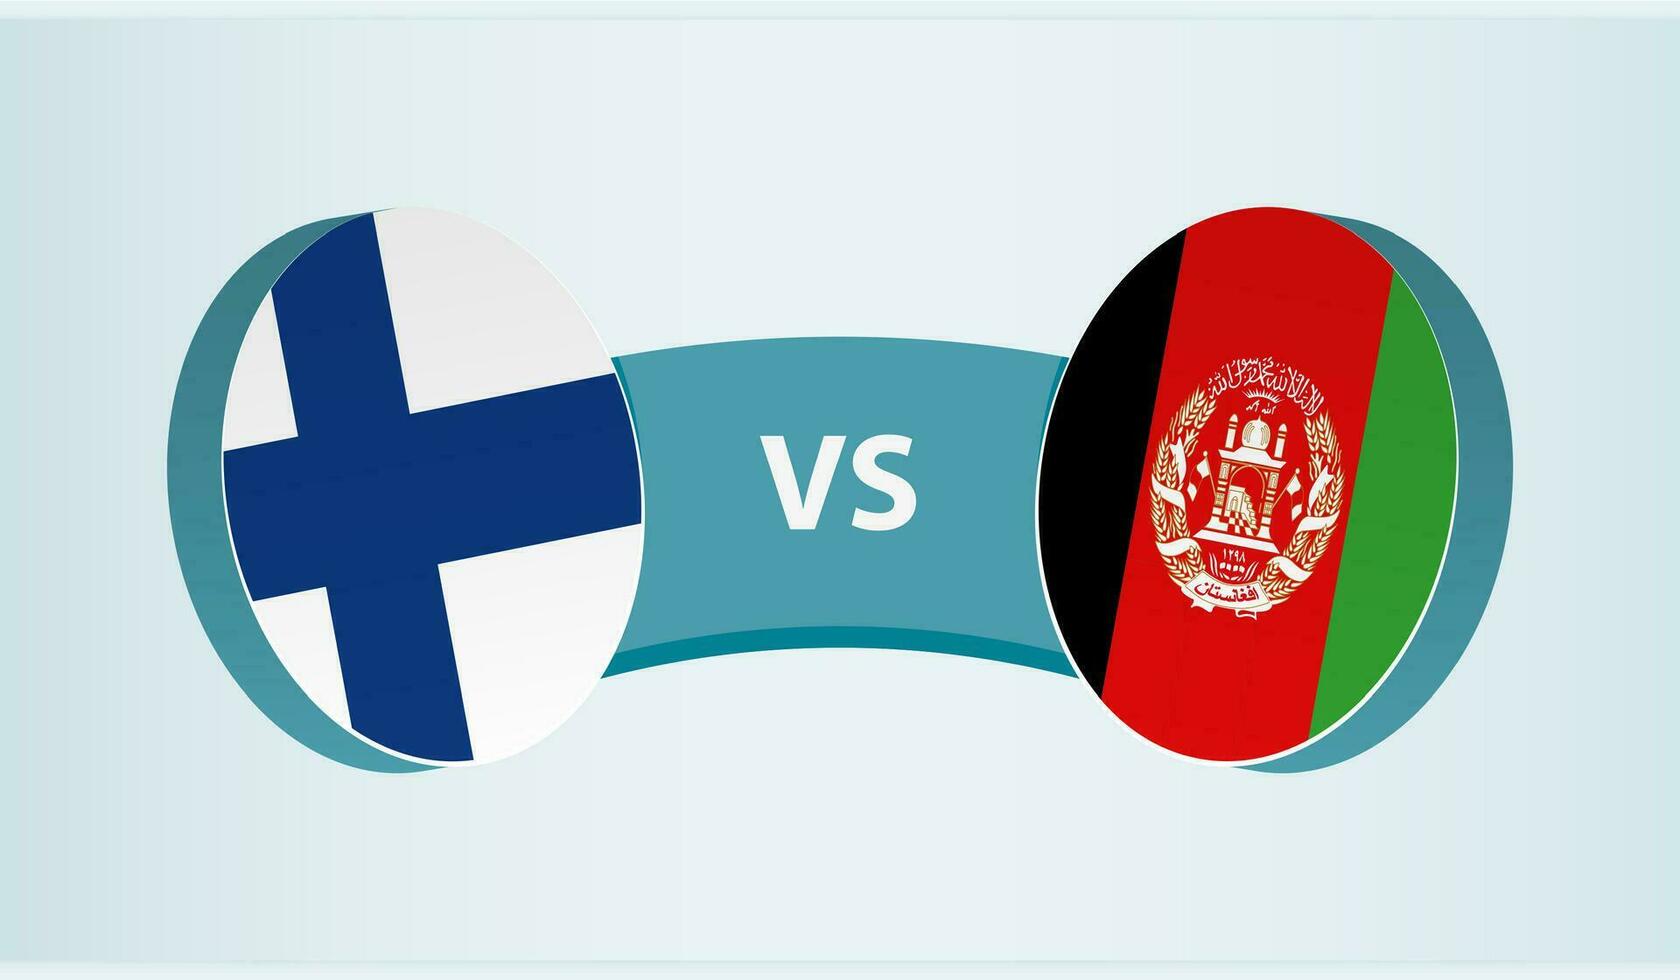 finland mot Afghanistan, team sporter konkurrens begrepp. vektor